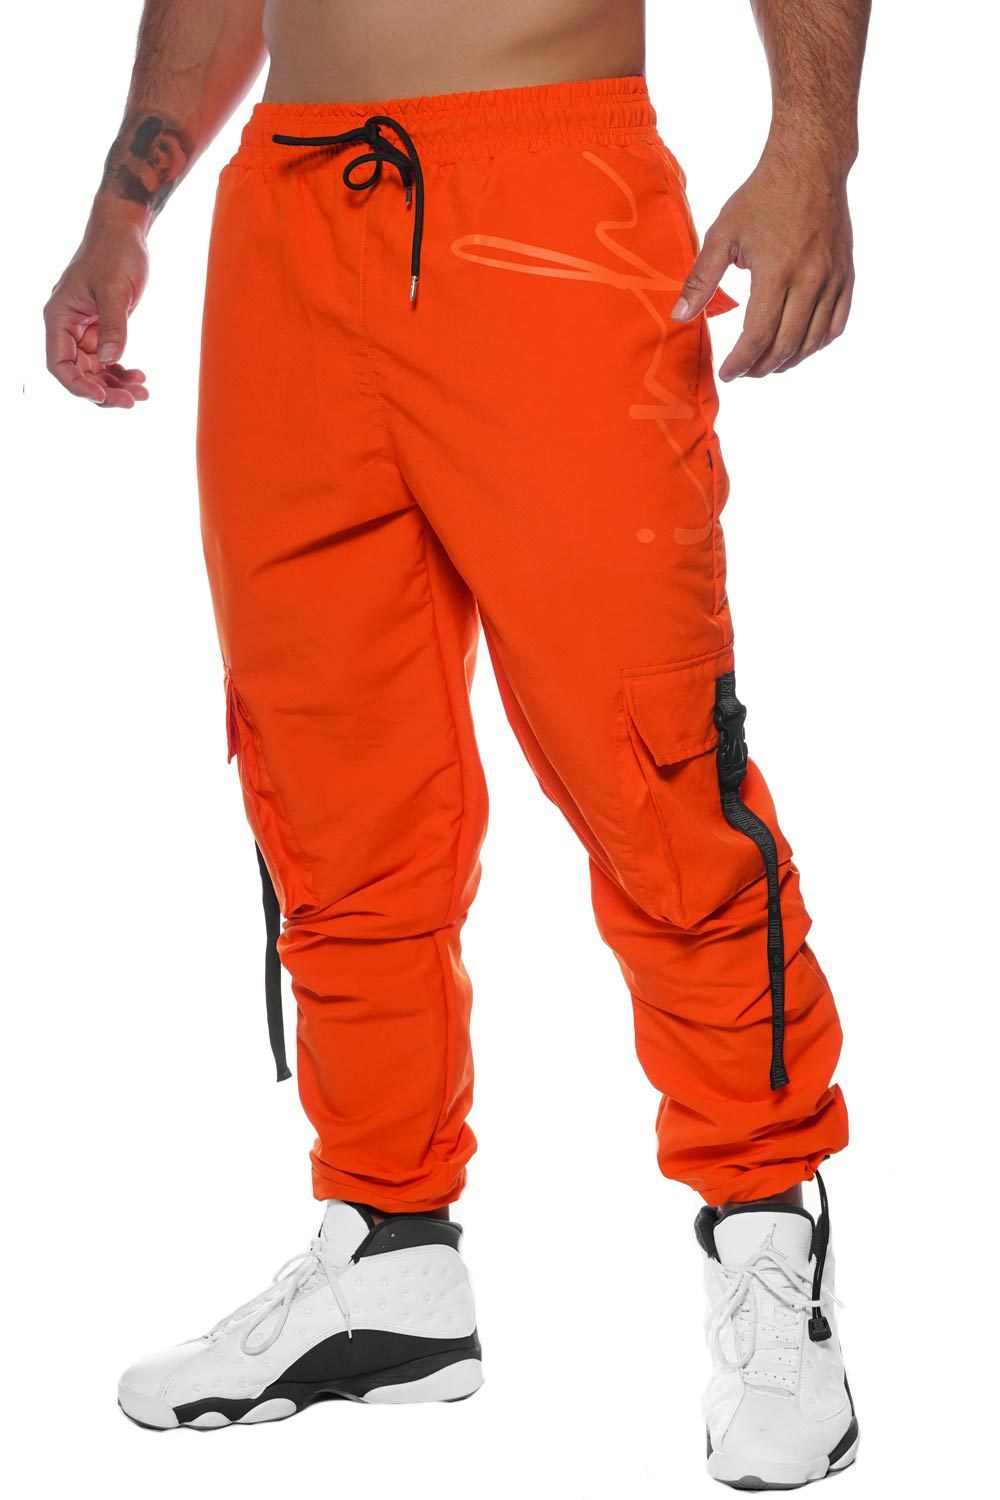 Pantalón jogger para hombre naranja oscuro Bolf 1145 naranja